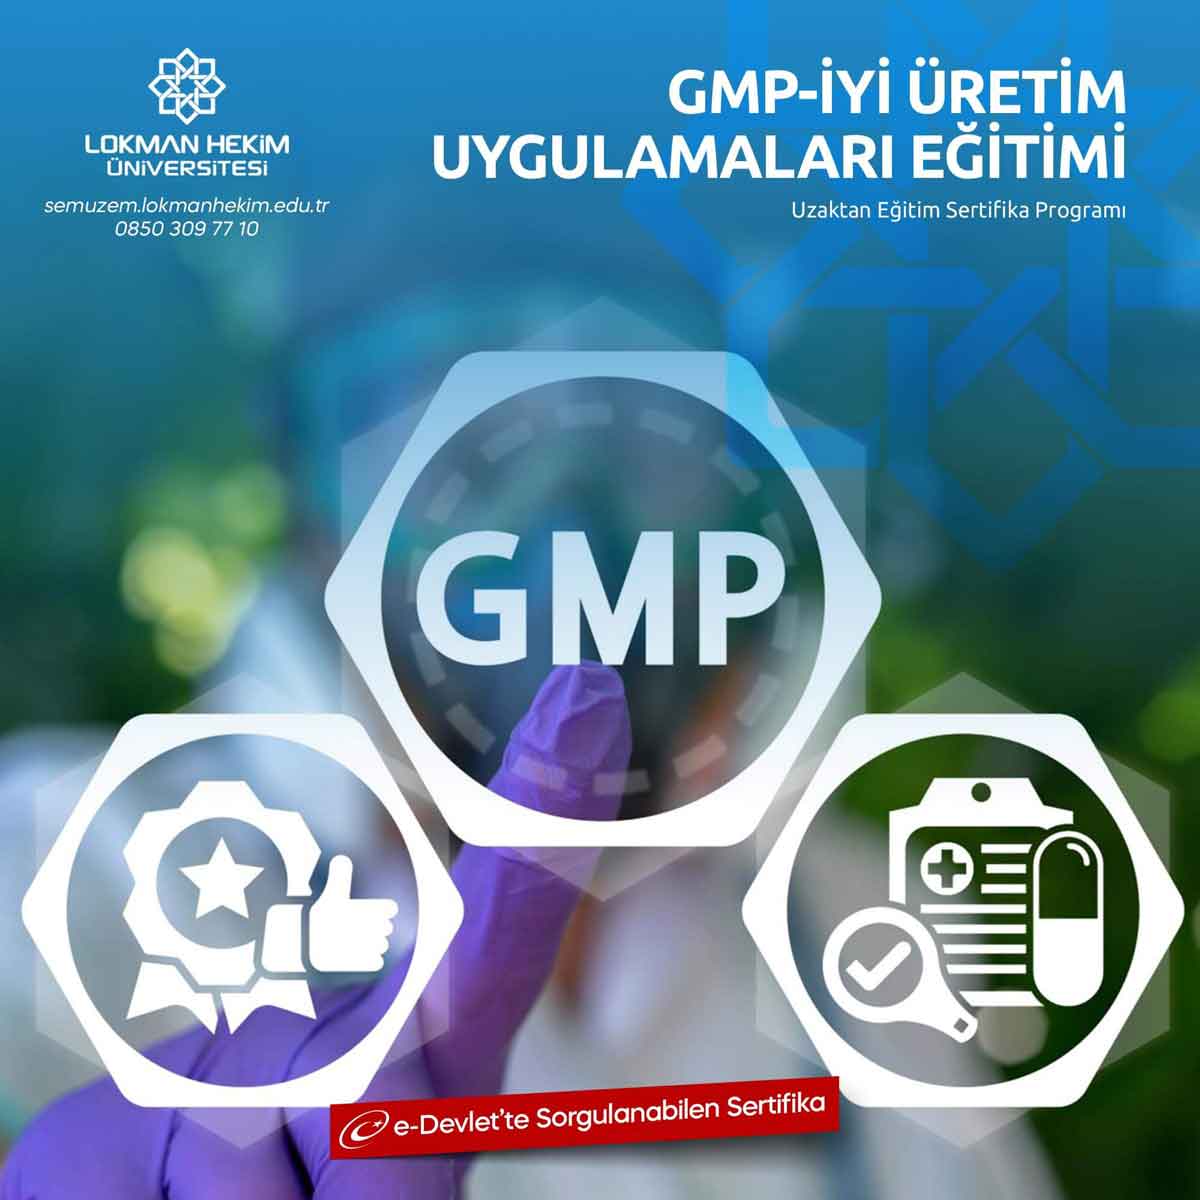 GMP-İyi Üretim Uygulamaları Sertifikası Nedir, Nasıl Alınır?